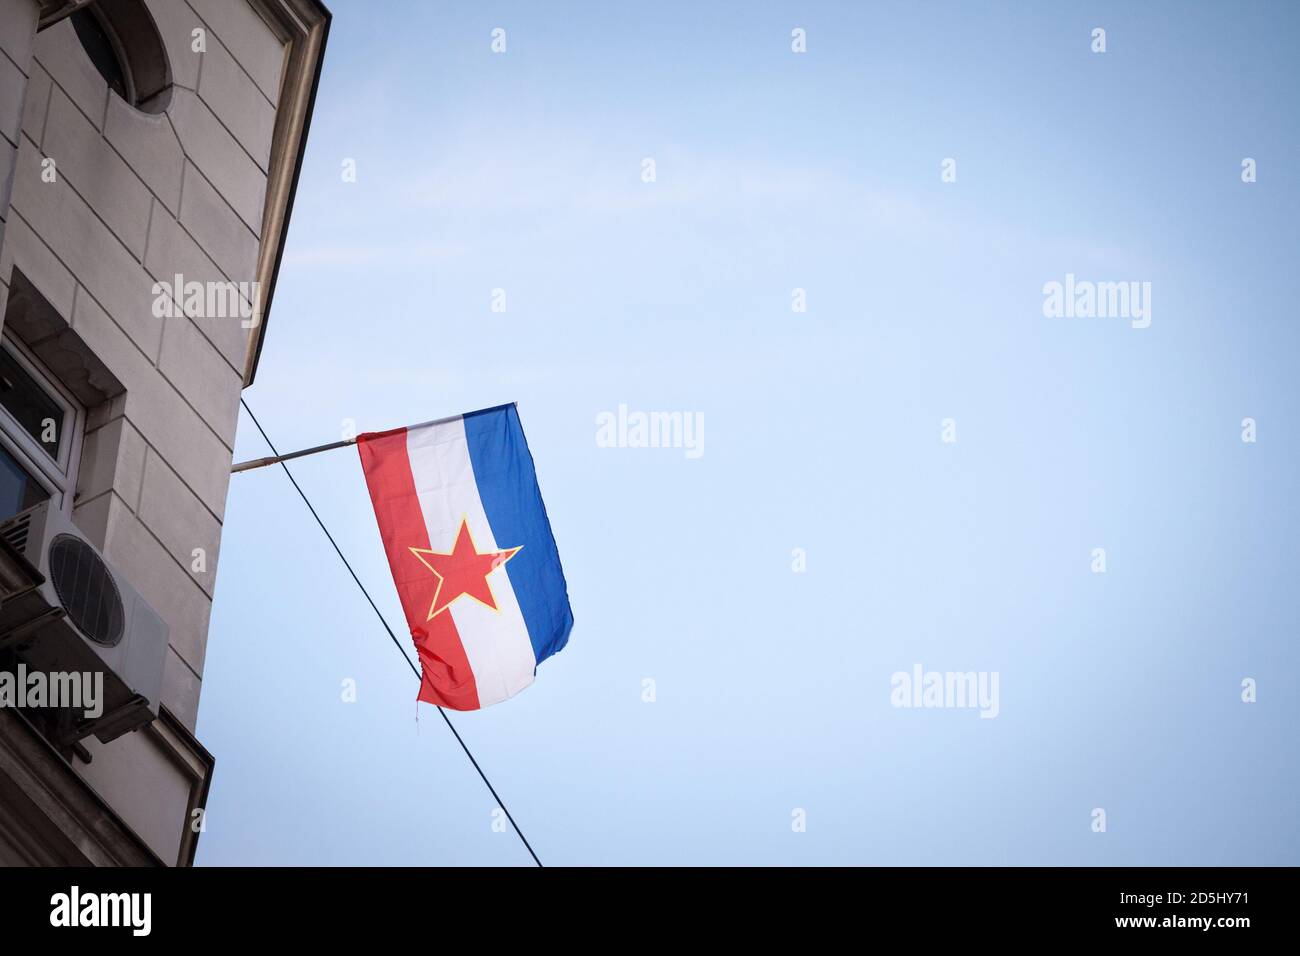 Jugoslawische Flagge, mit dem roten Stern der kommunistischen sozialistischen Bundesrepublik jugoslawien (SFRY), winkt in Belgrad, der ehemaligen Hauptstadt dieser Stockfoto